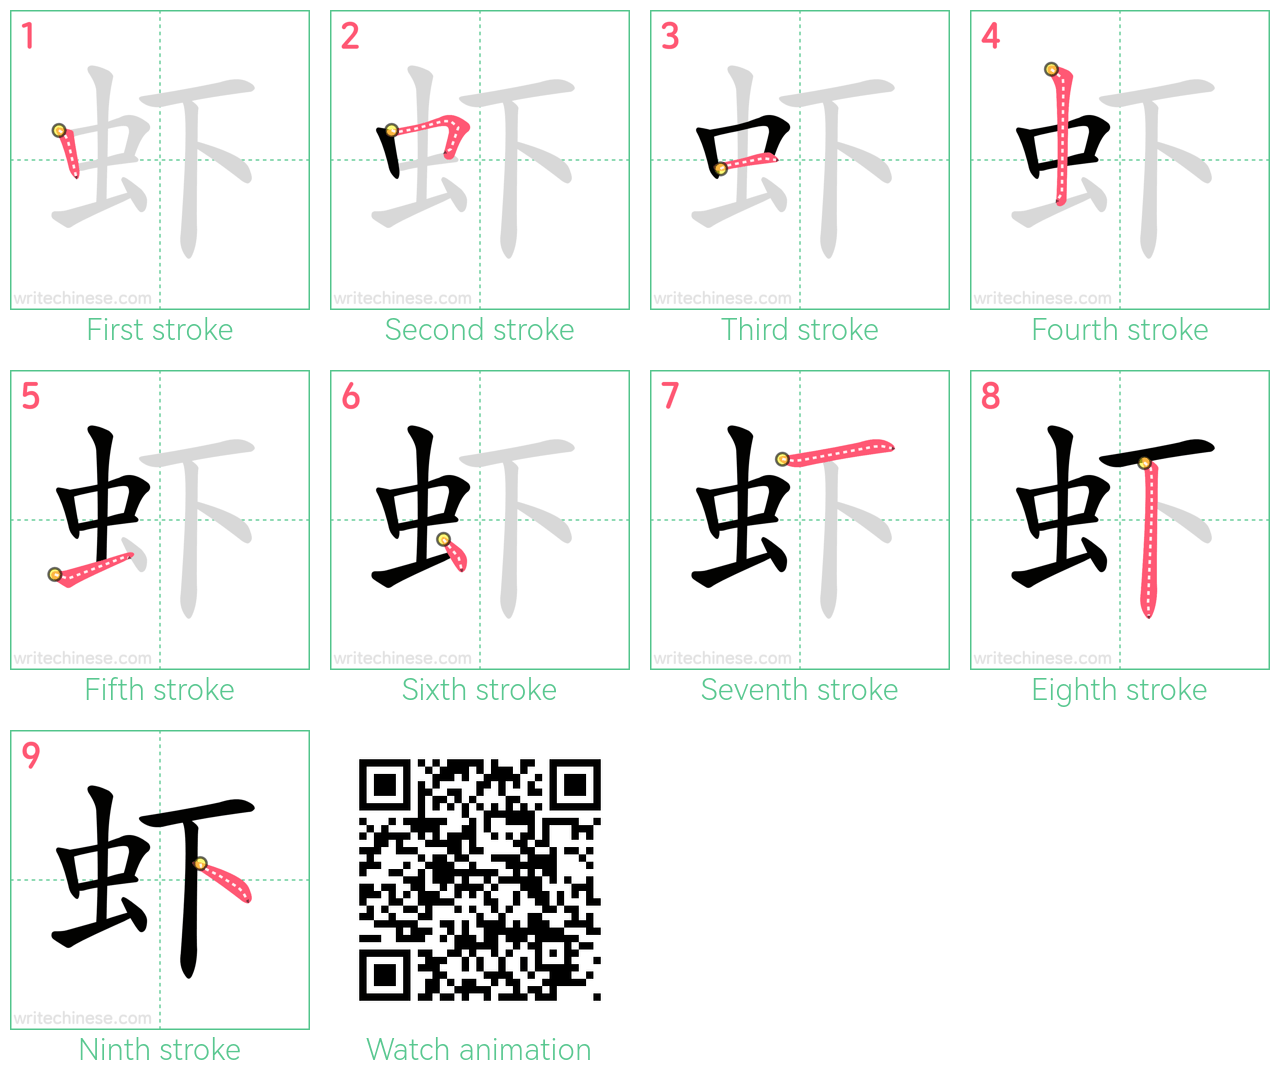 虾 step-by-step stroke order diagrams